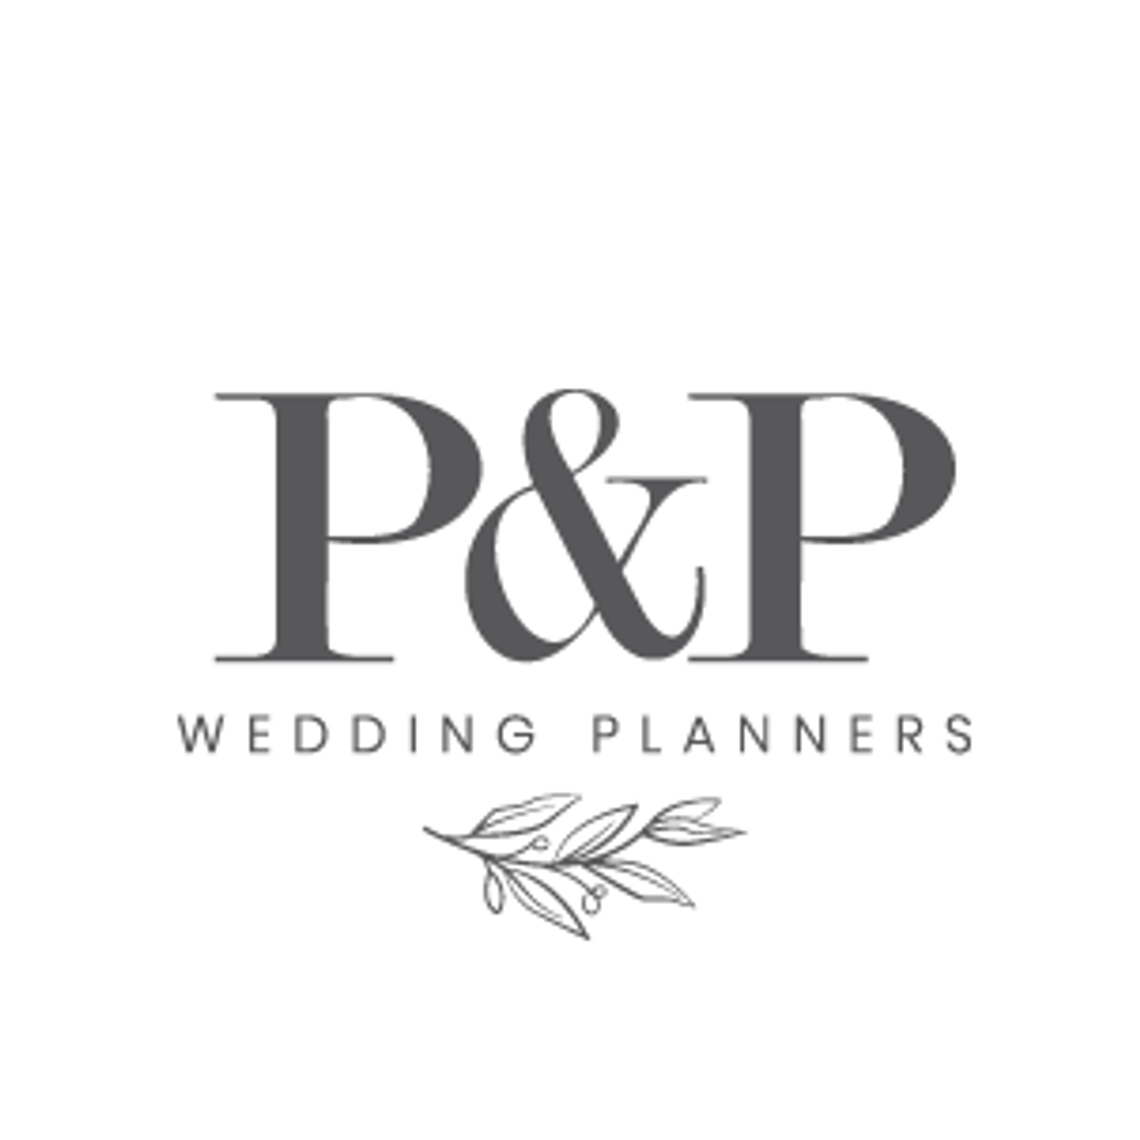 Paula&Patrizia Wedding Planners Poznań